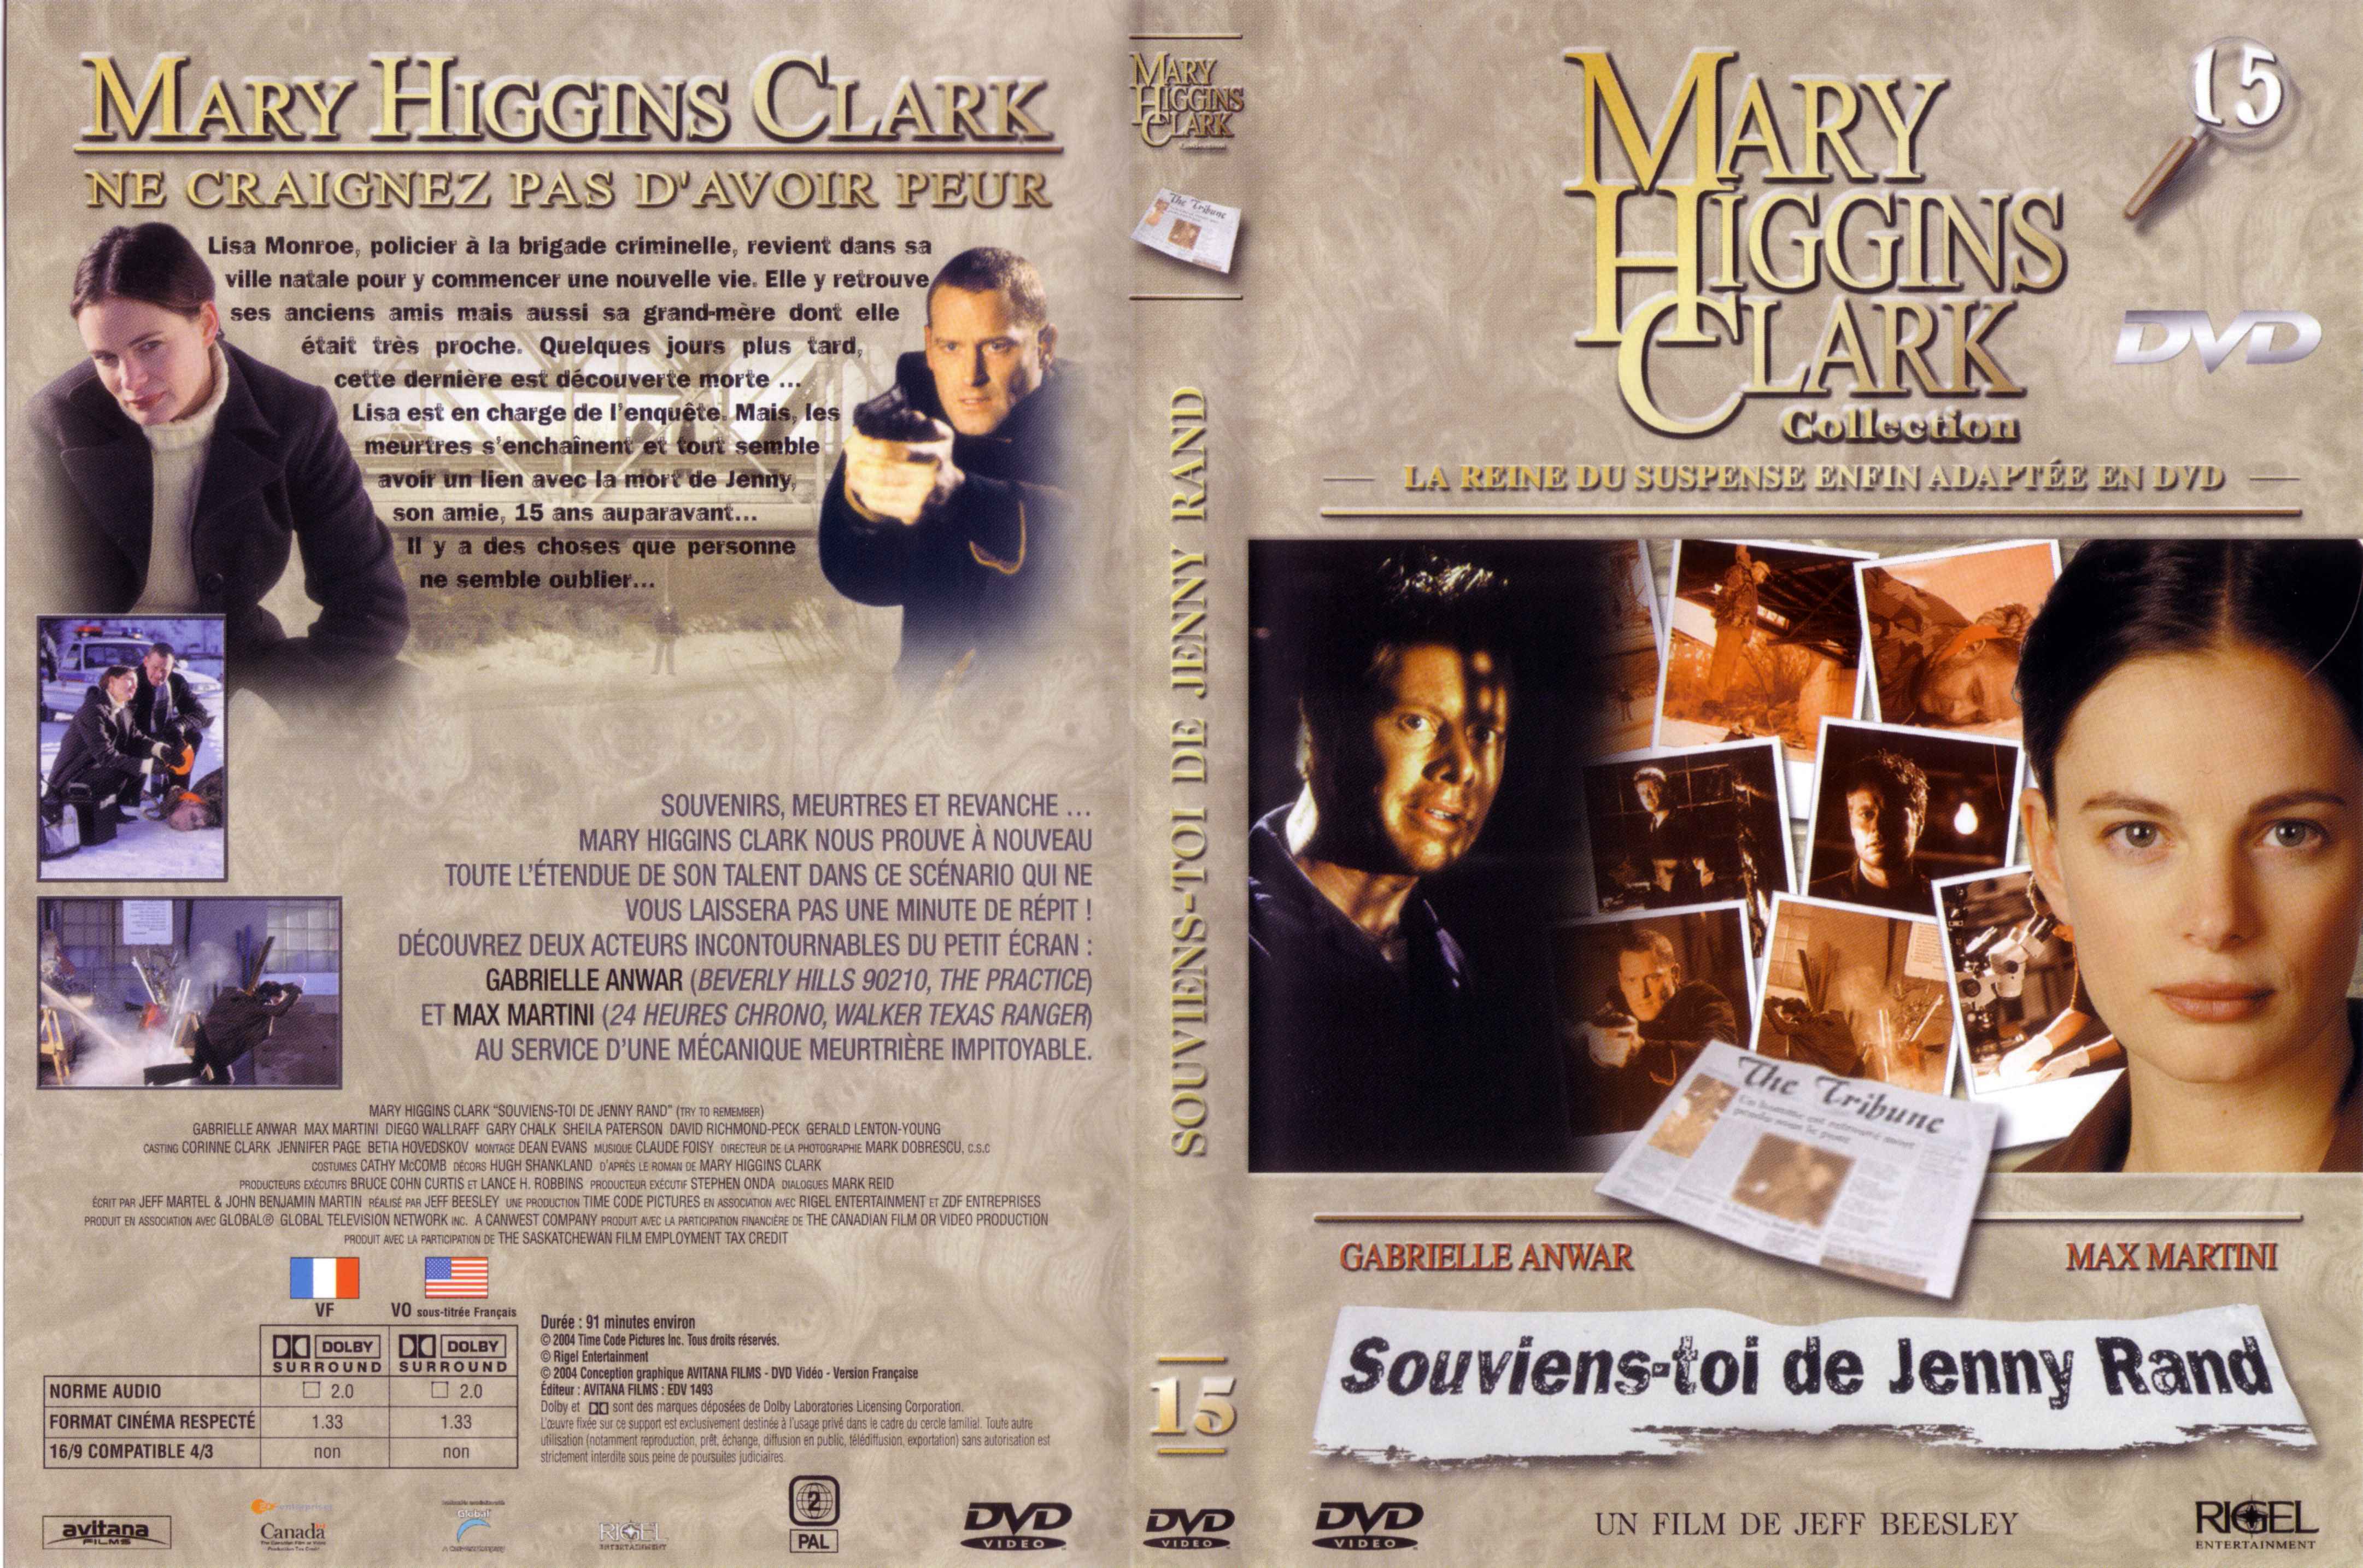 Jaquette DVD de Mary Higgins Clark vol 15 - Souviens toi de Jenny Rand - Cinéma Passion